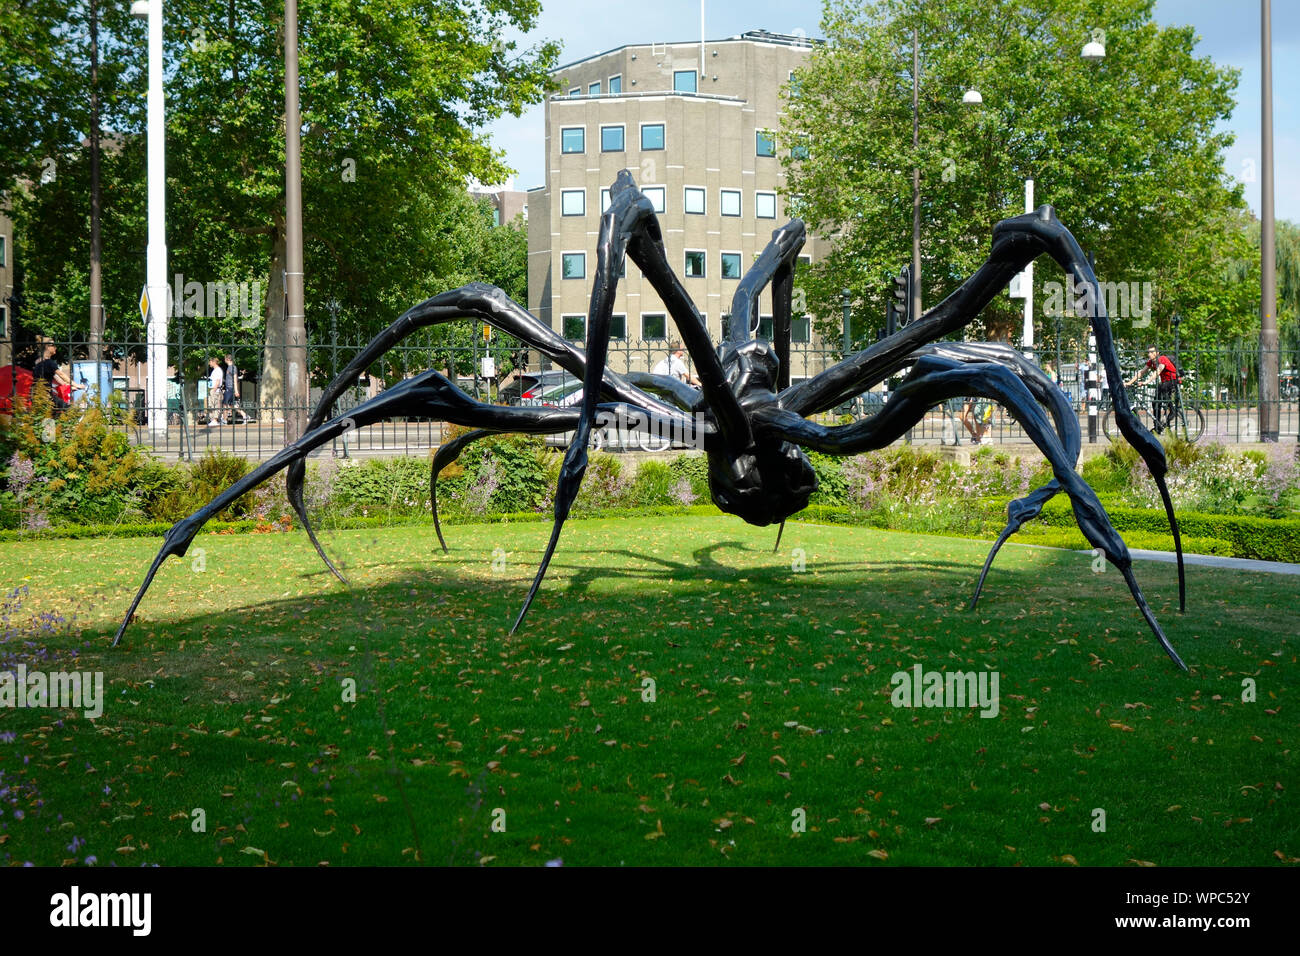 En cuclillas Spider 2003 por French-American artista Louise Bourgeois 1911-2010. Los jardines del Rijksmuseum, Amsterdam, Países Bajos. Foto de stock